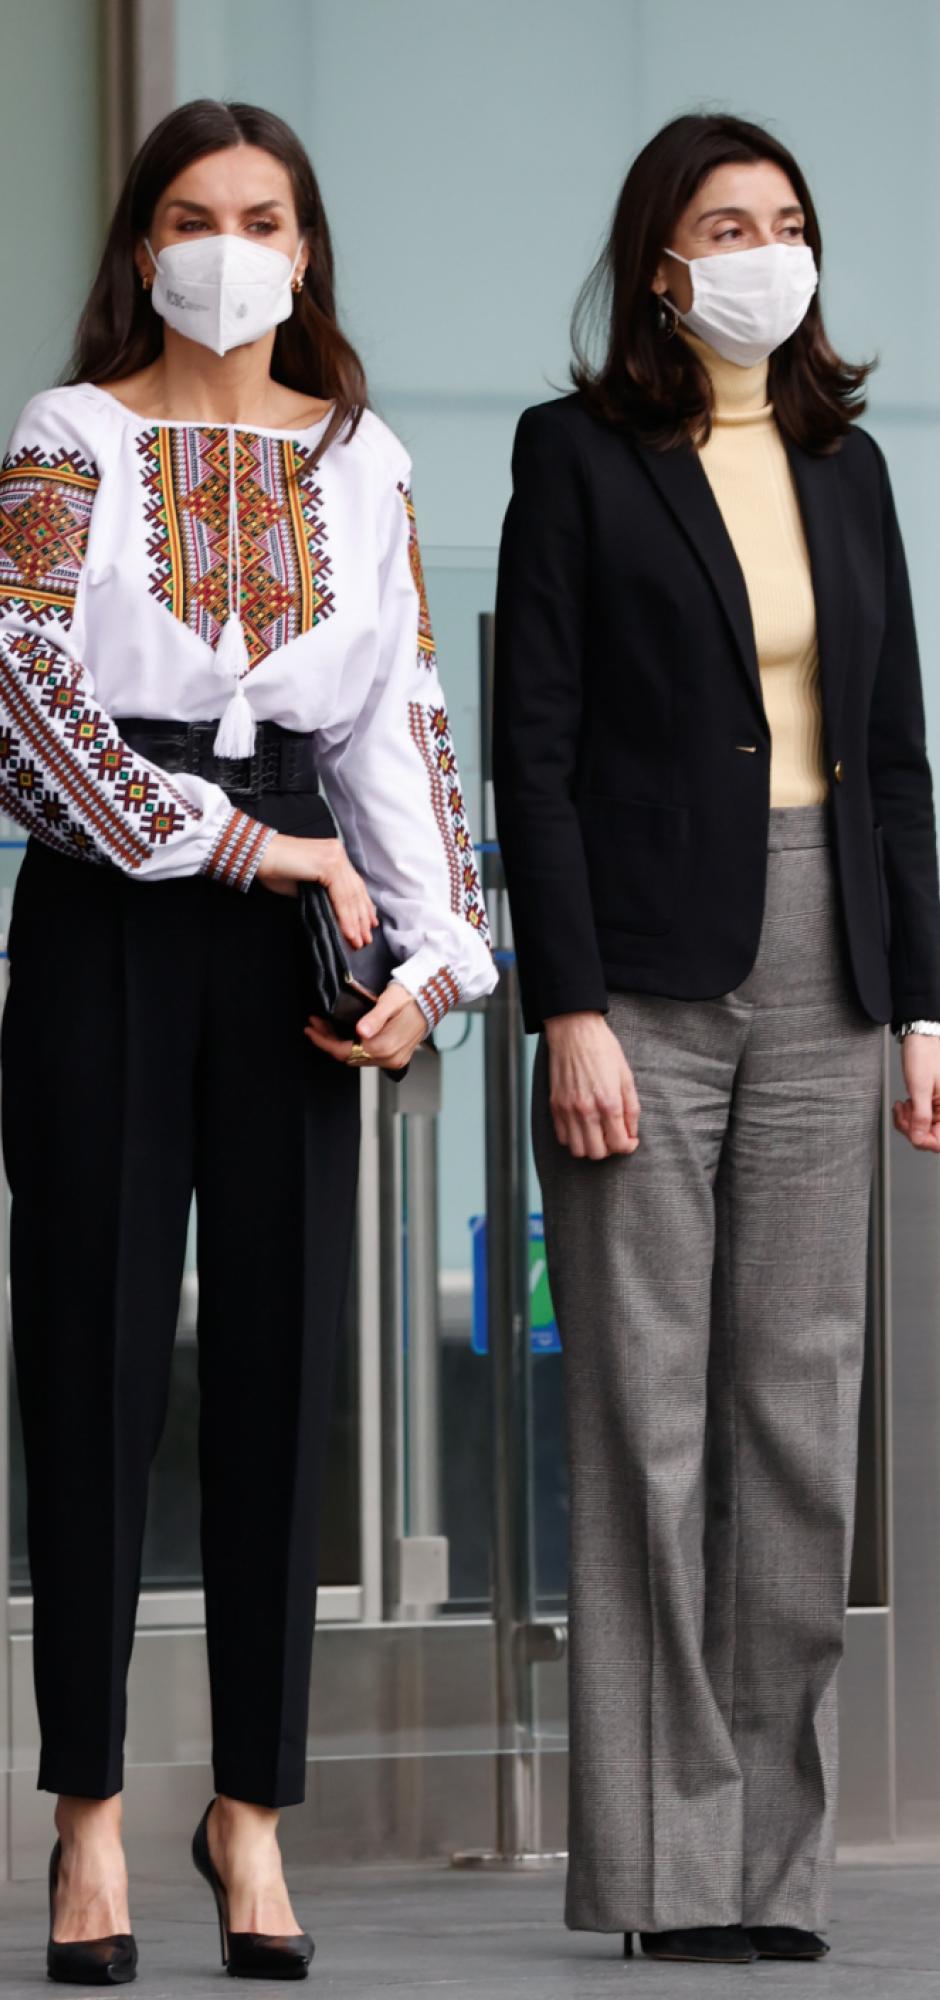 La Reina ha mandado un mensaje de apoyo a Ucrania con una blusa con bordados étnicos y dos borlas al estilo ucraniano